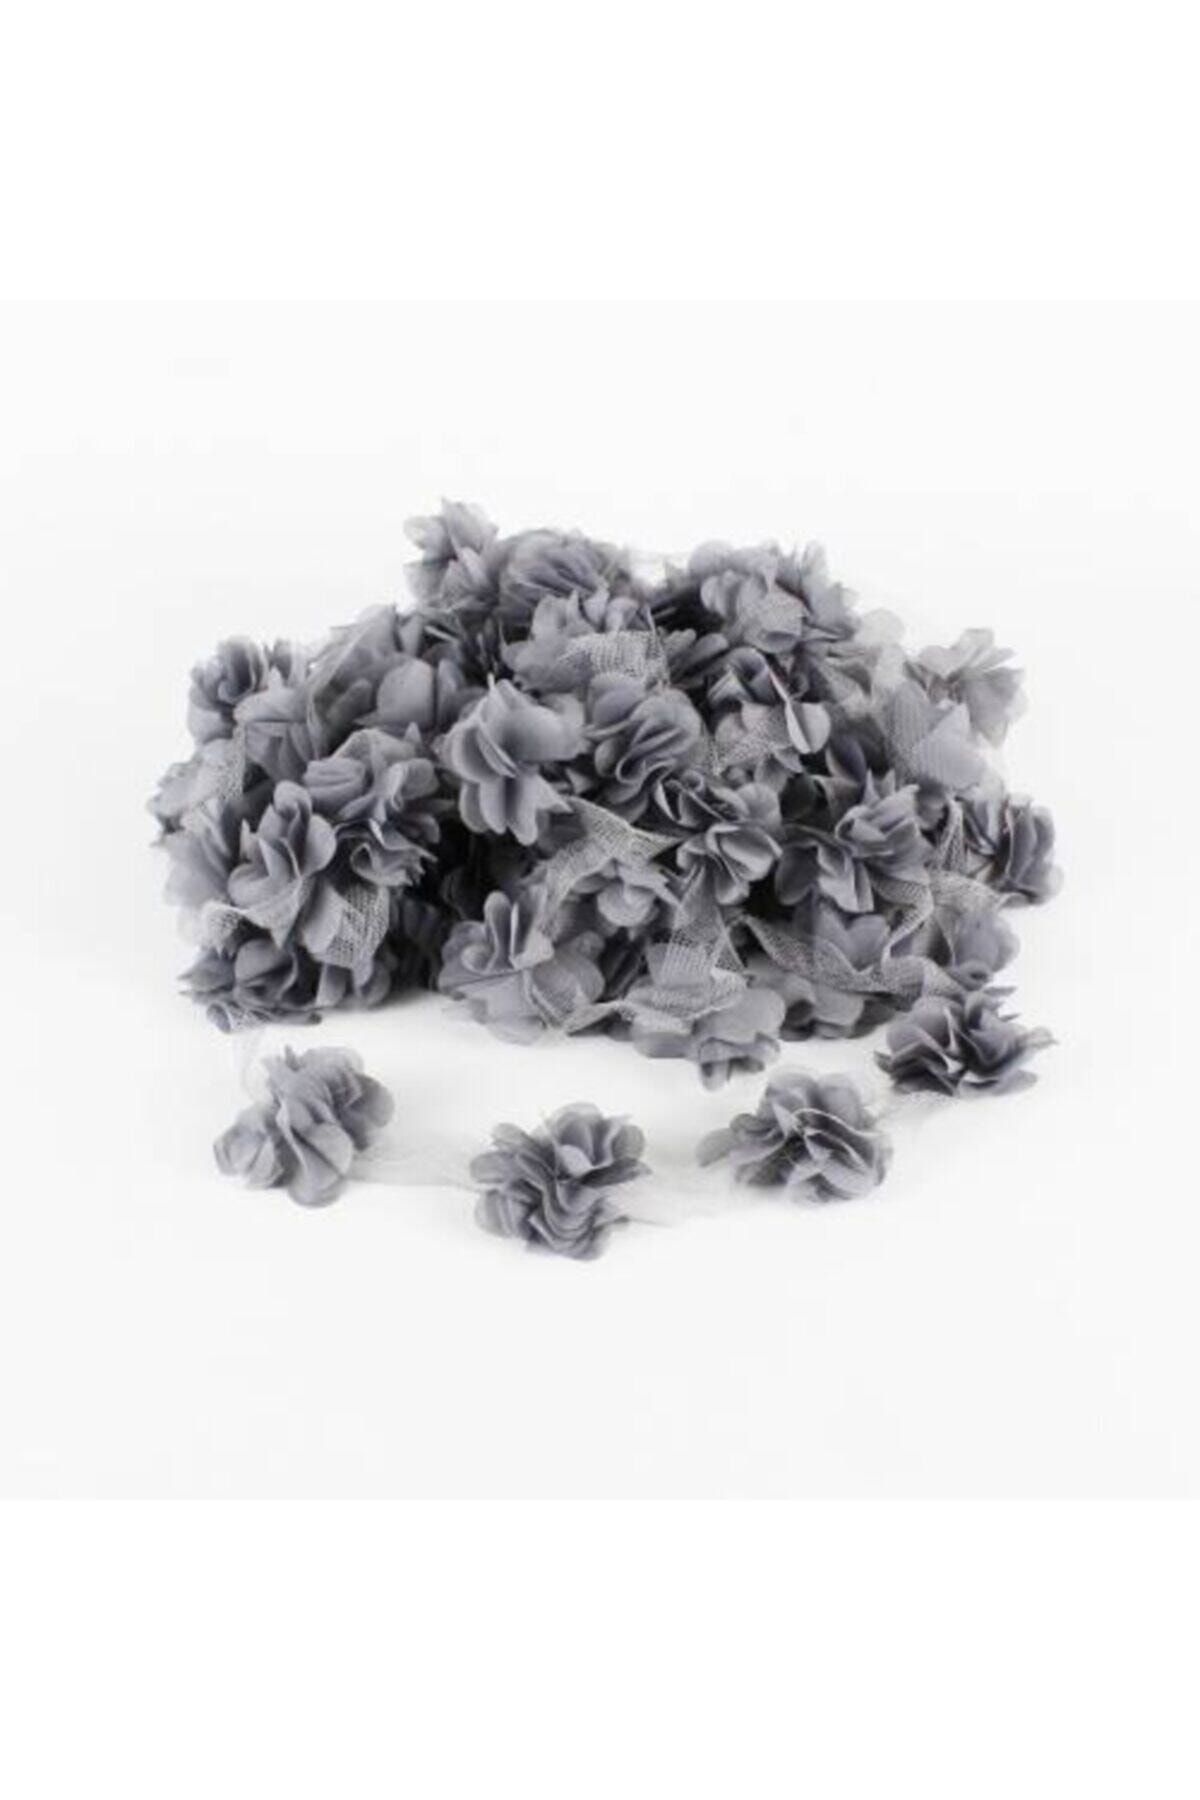 Aker Hediyelik Füme 1m Gül Lazer Kesim Çiçek 12-13 Adet Organze Tül Kenar Süsü Tekstil Tasarım Kumaşı Yapay Süs